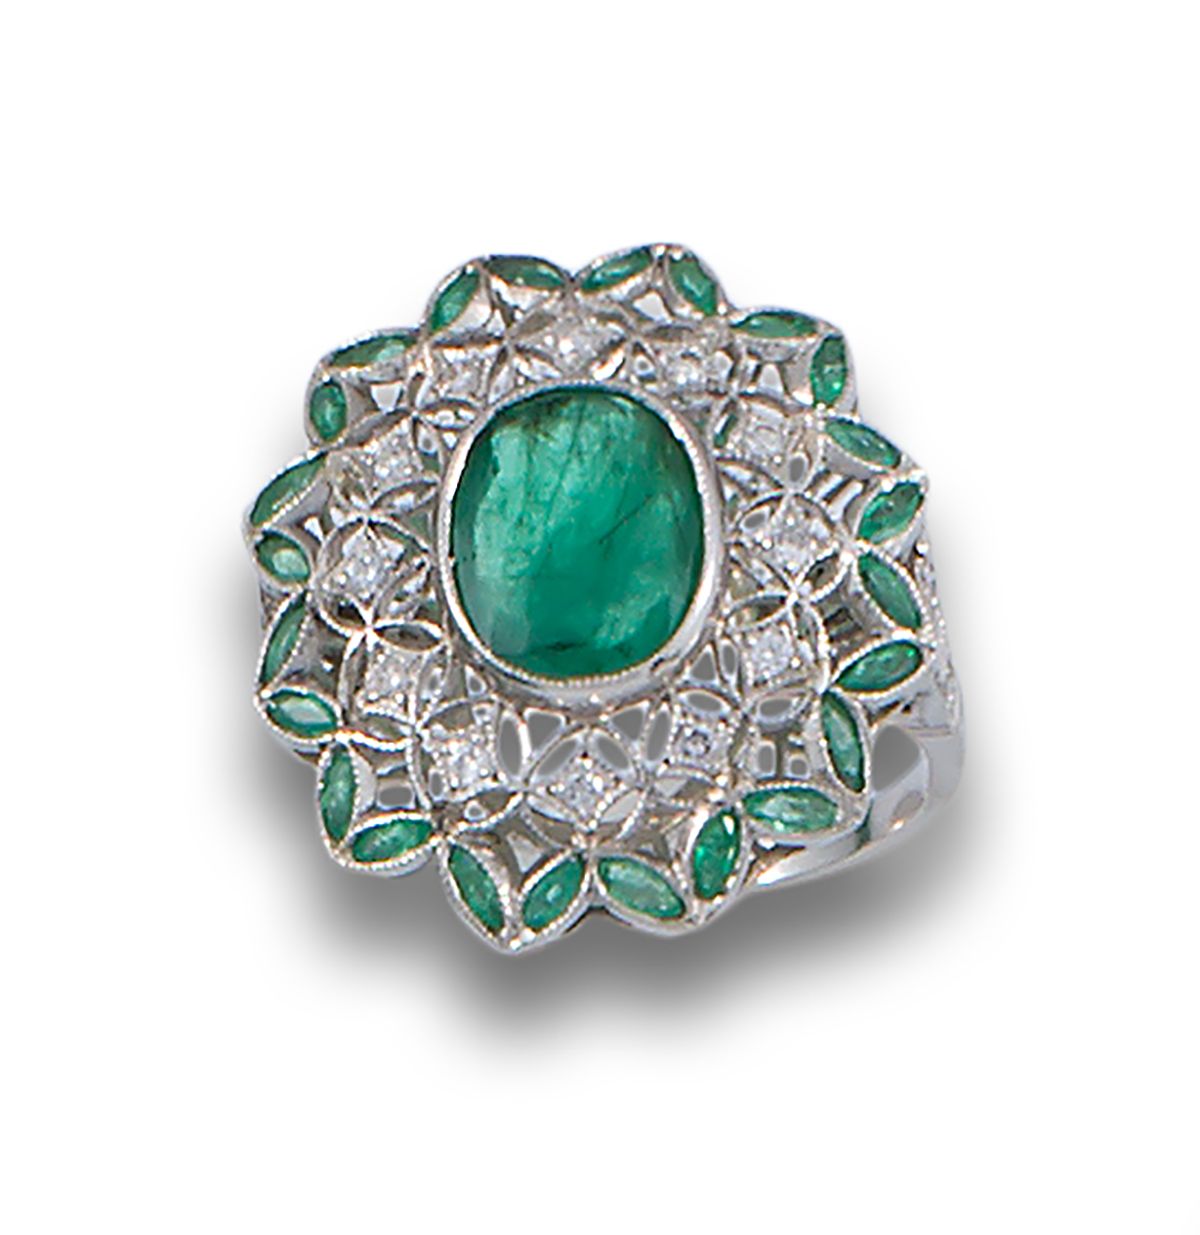 PLATINUM EMERALD DIAMOND DECO RING 装饰艺术风格的铂金枕形切割祖母绿镀金中央戒指，配以钻石和祖母绿的镂空戒体 .